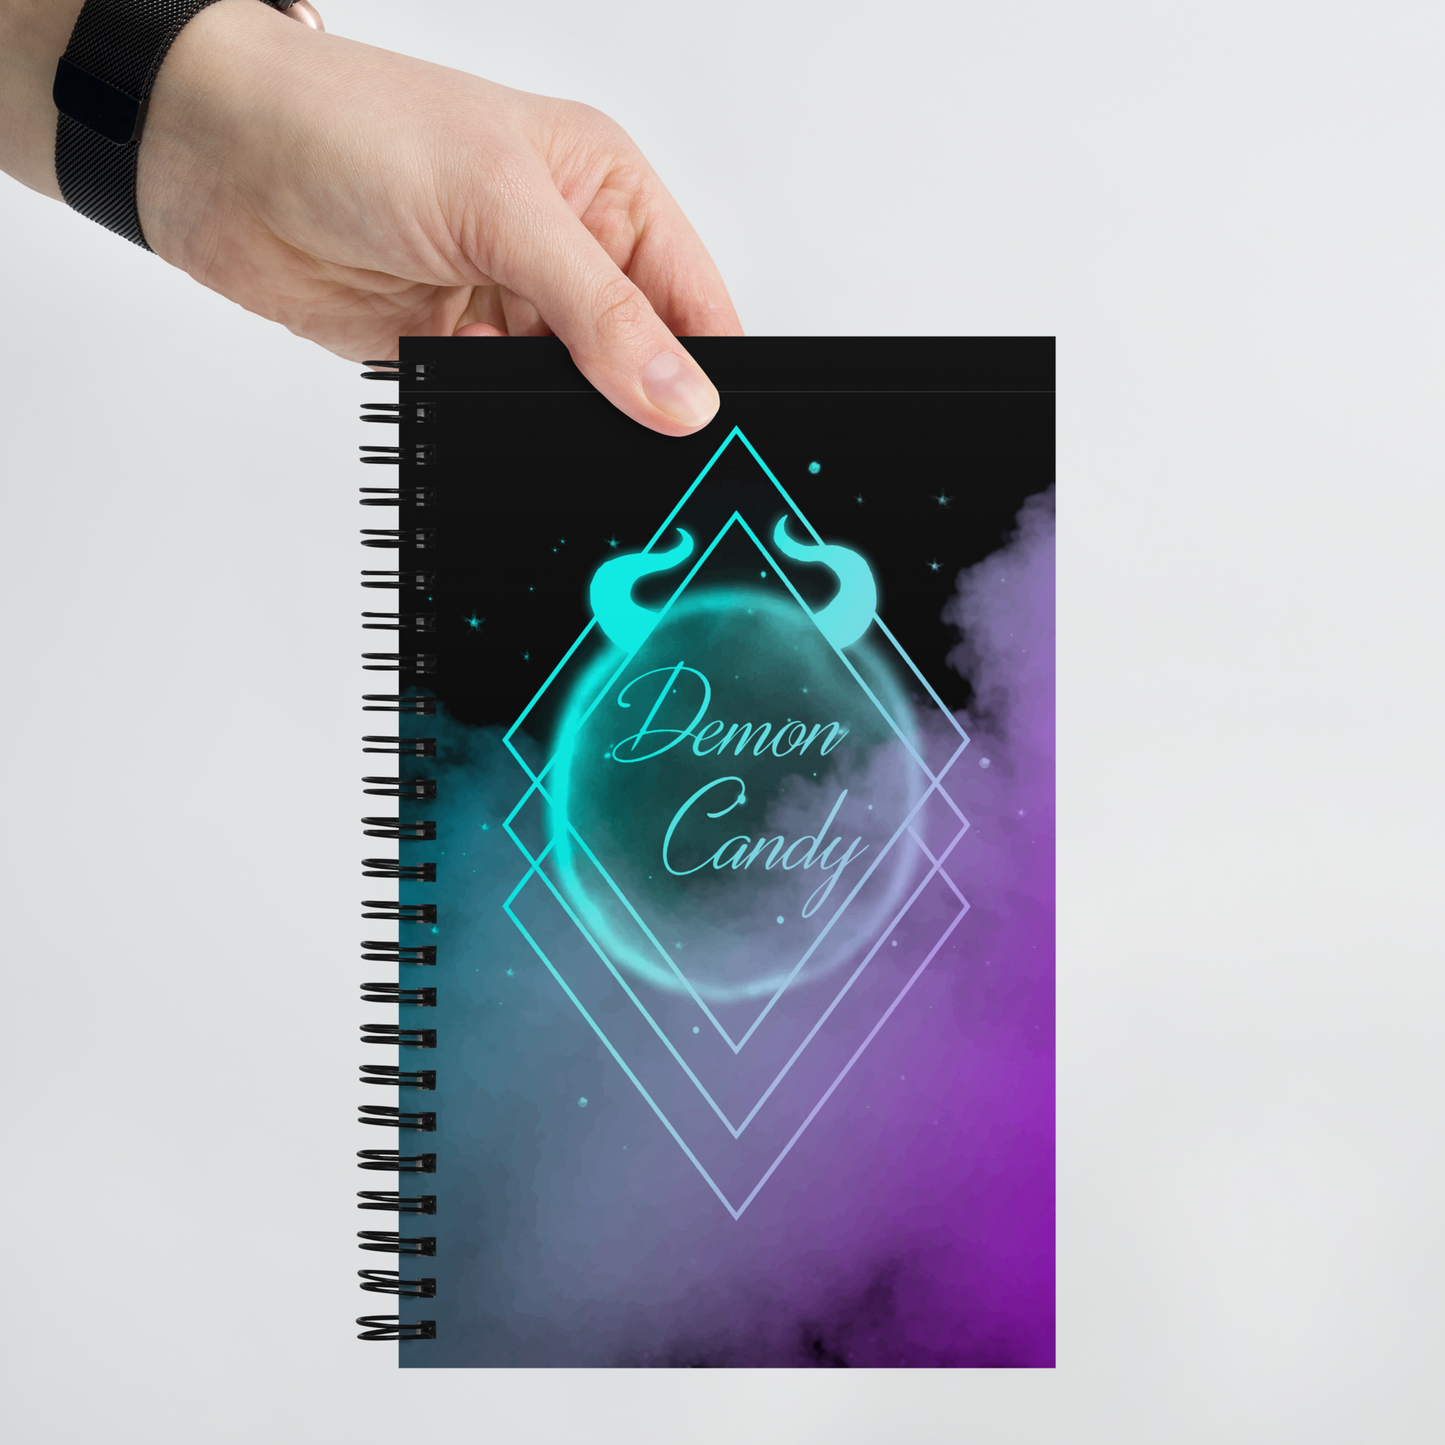 Diamond Series Violet Rebellion Spiral Notebook